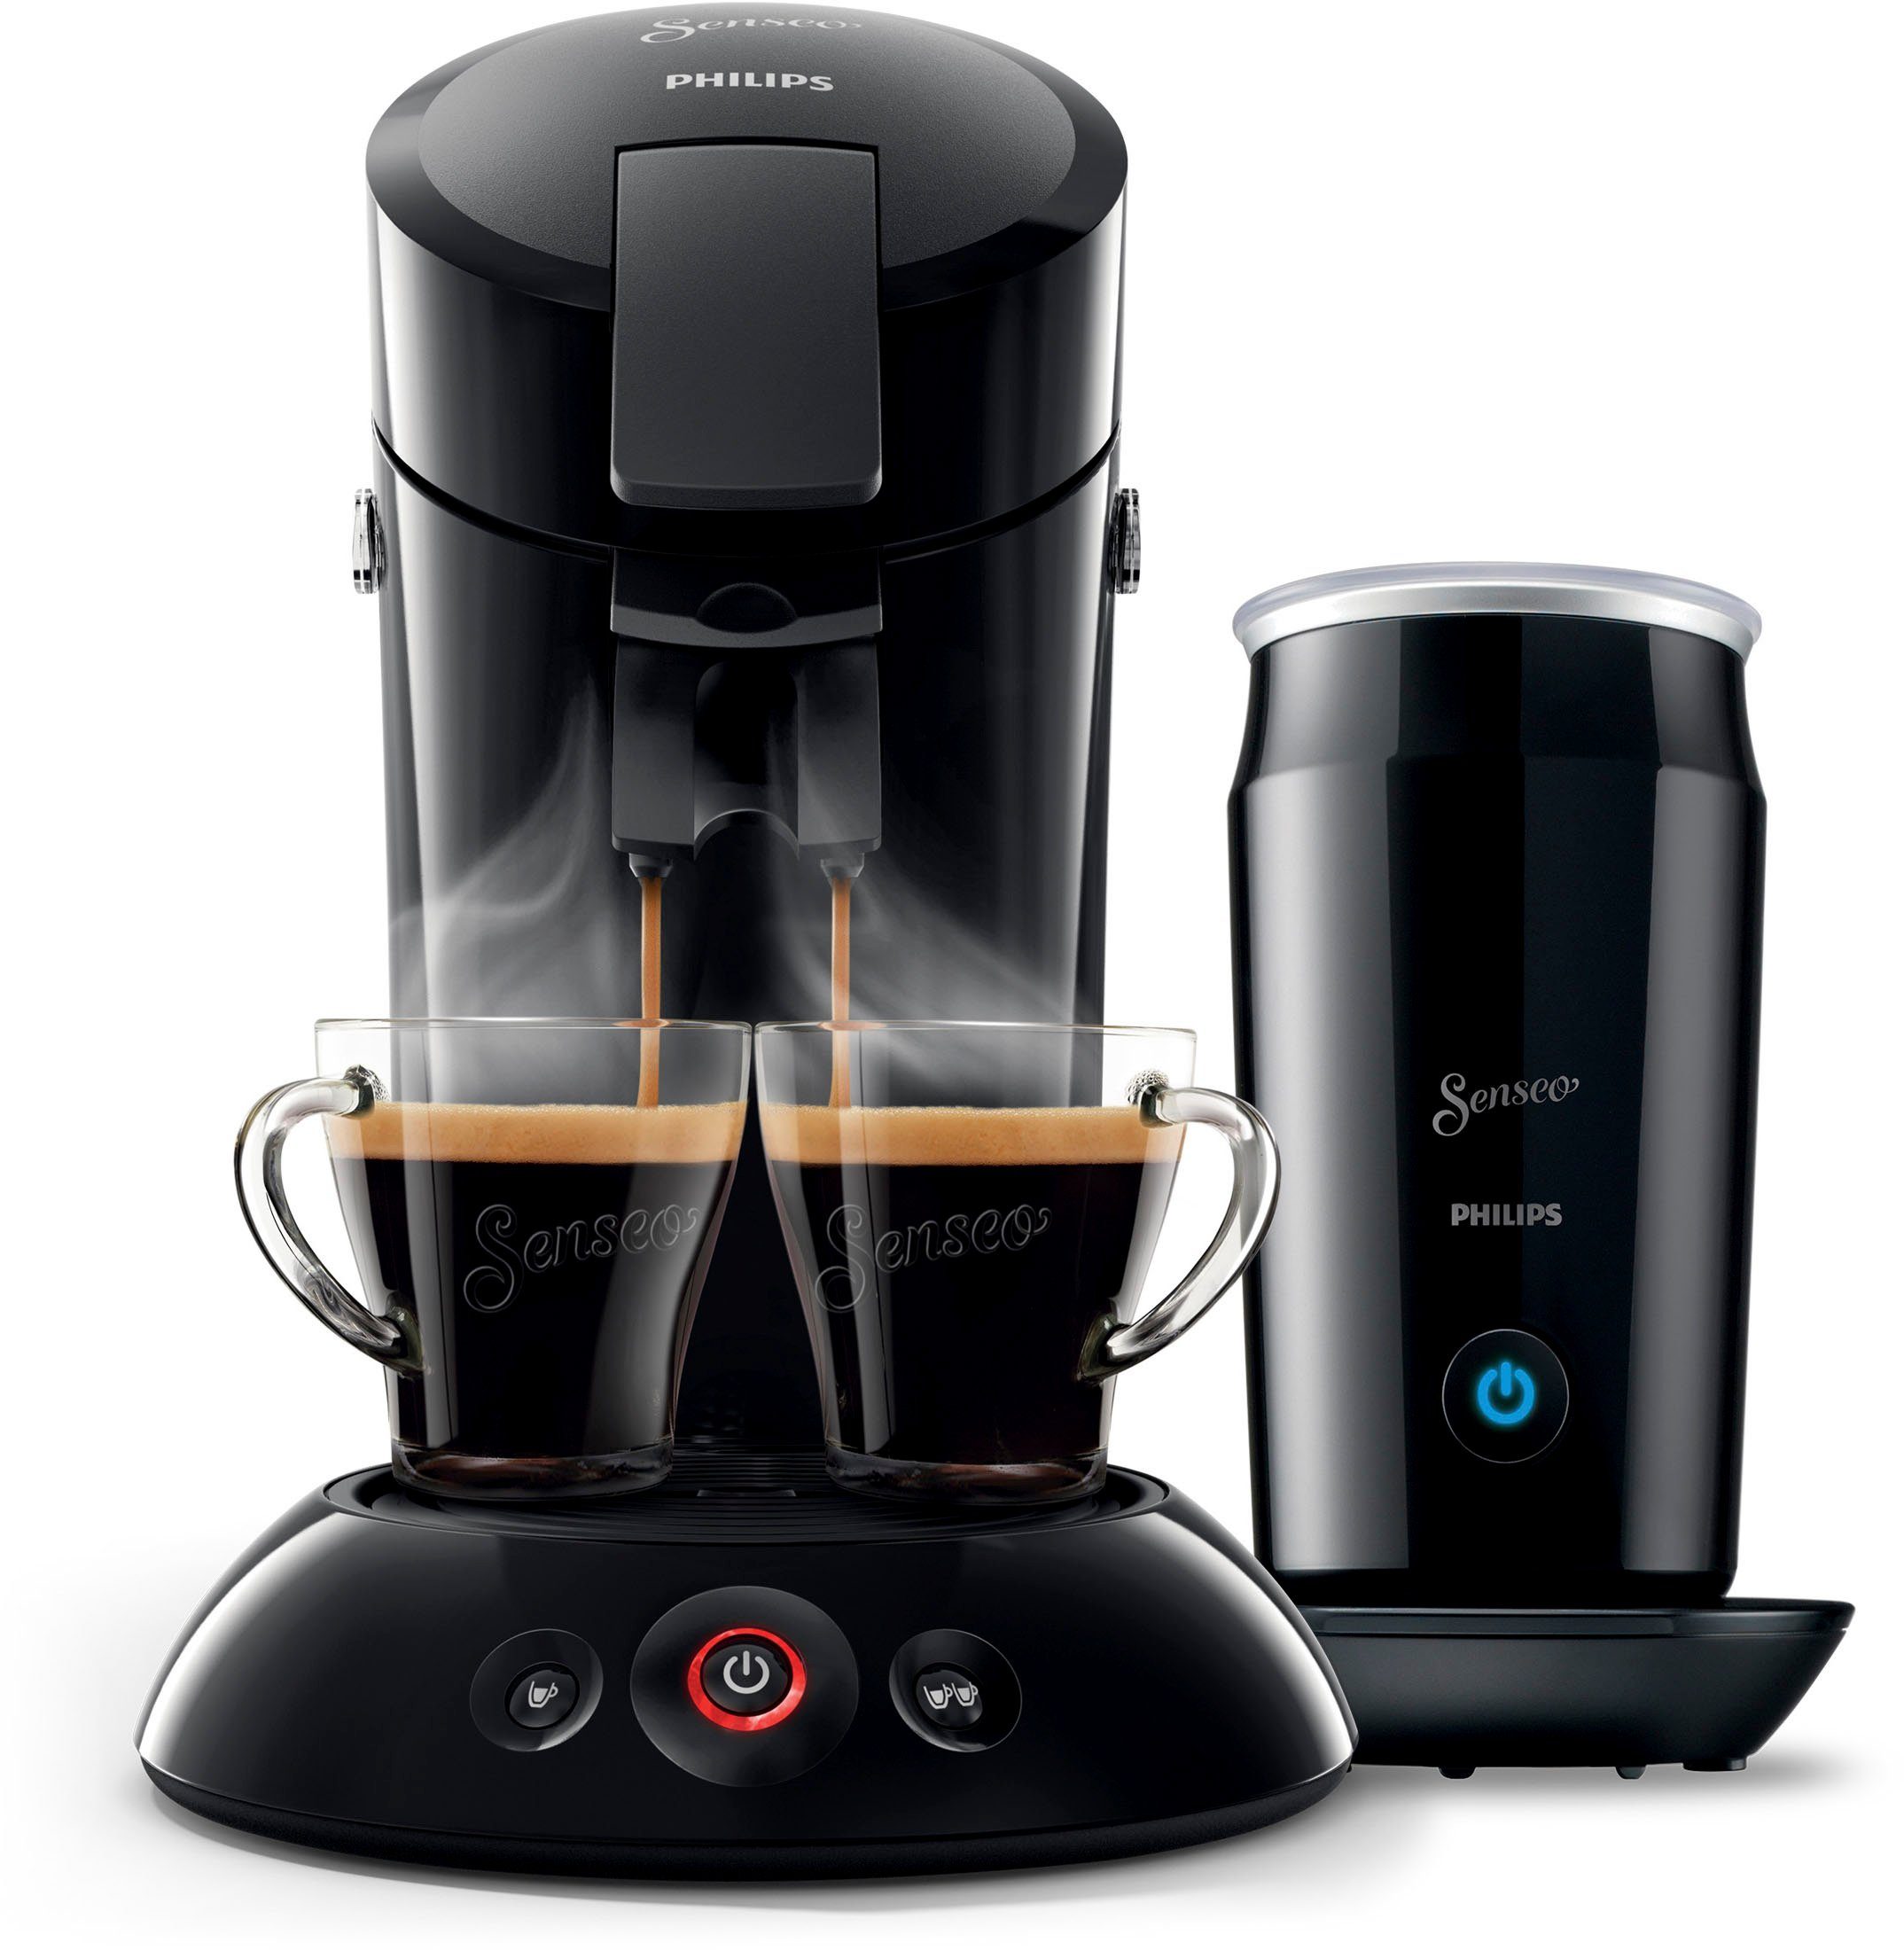 Philips Senseo Kaffeepadmaschine Original HD6553/65, inkl. Milchaufschäumer  Wert: 79,99